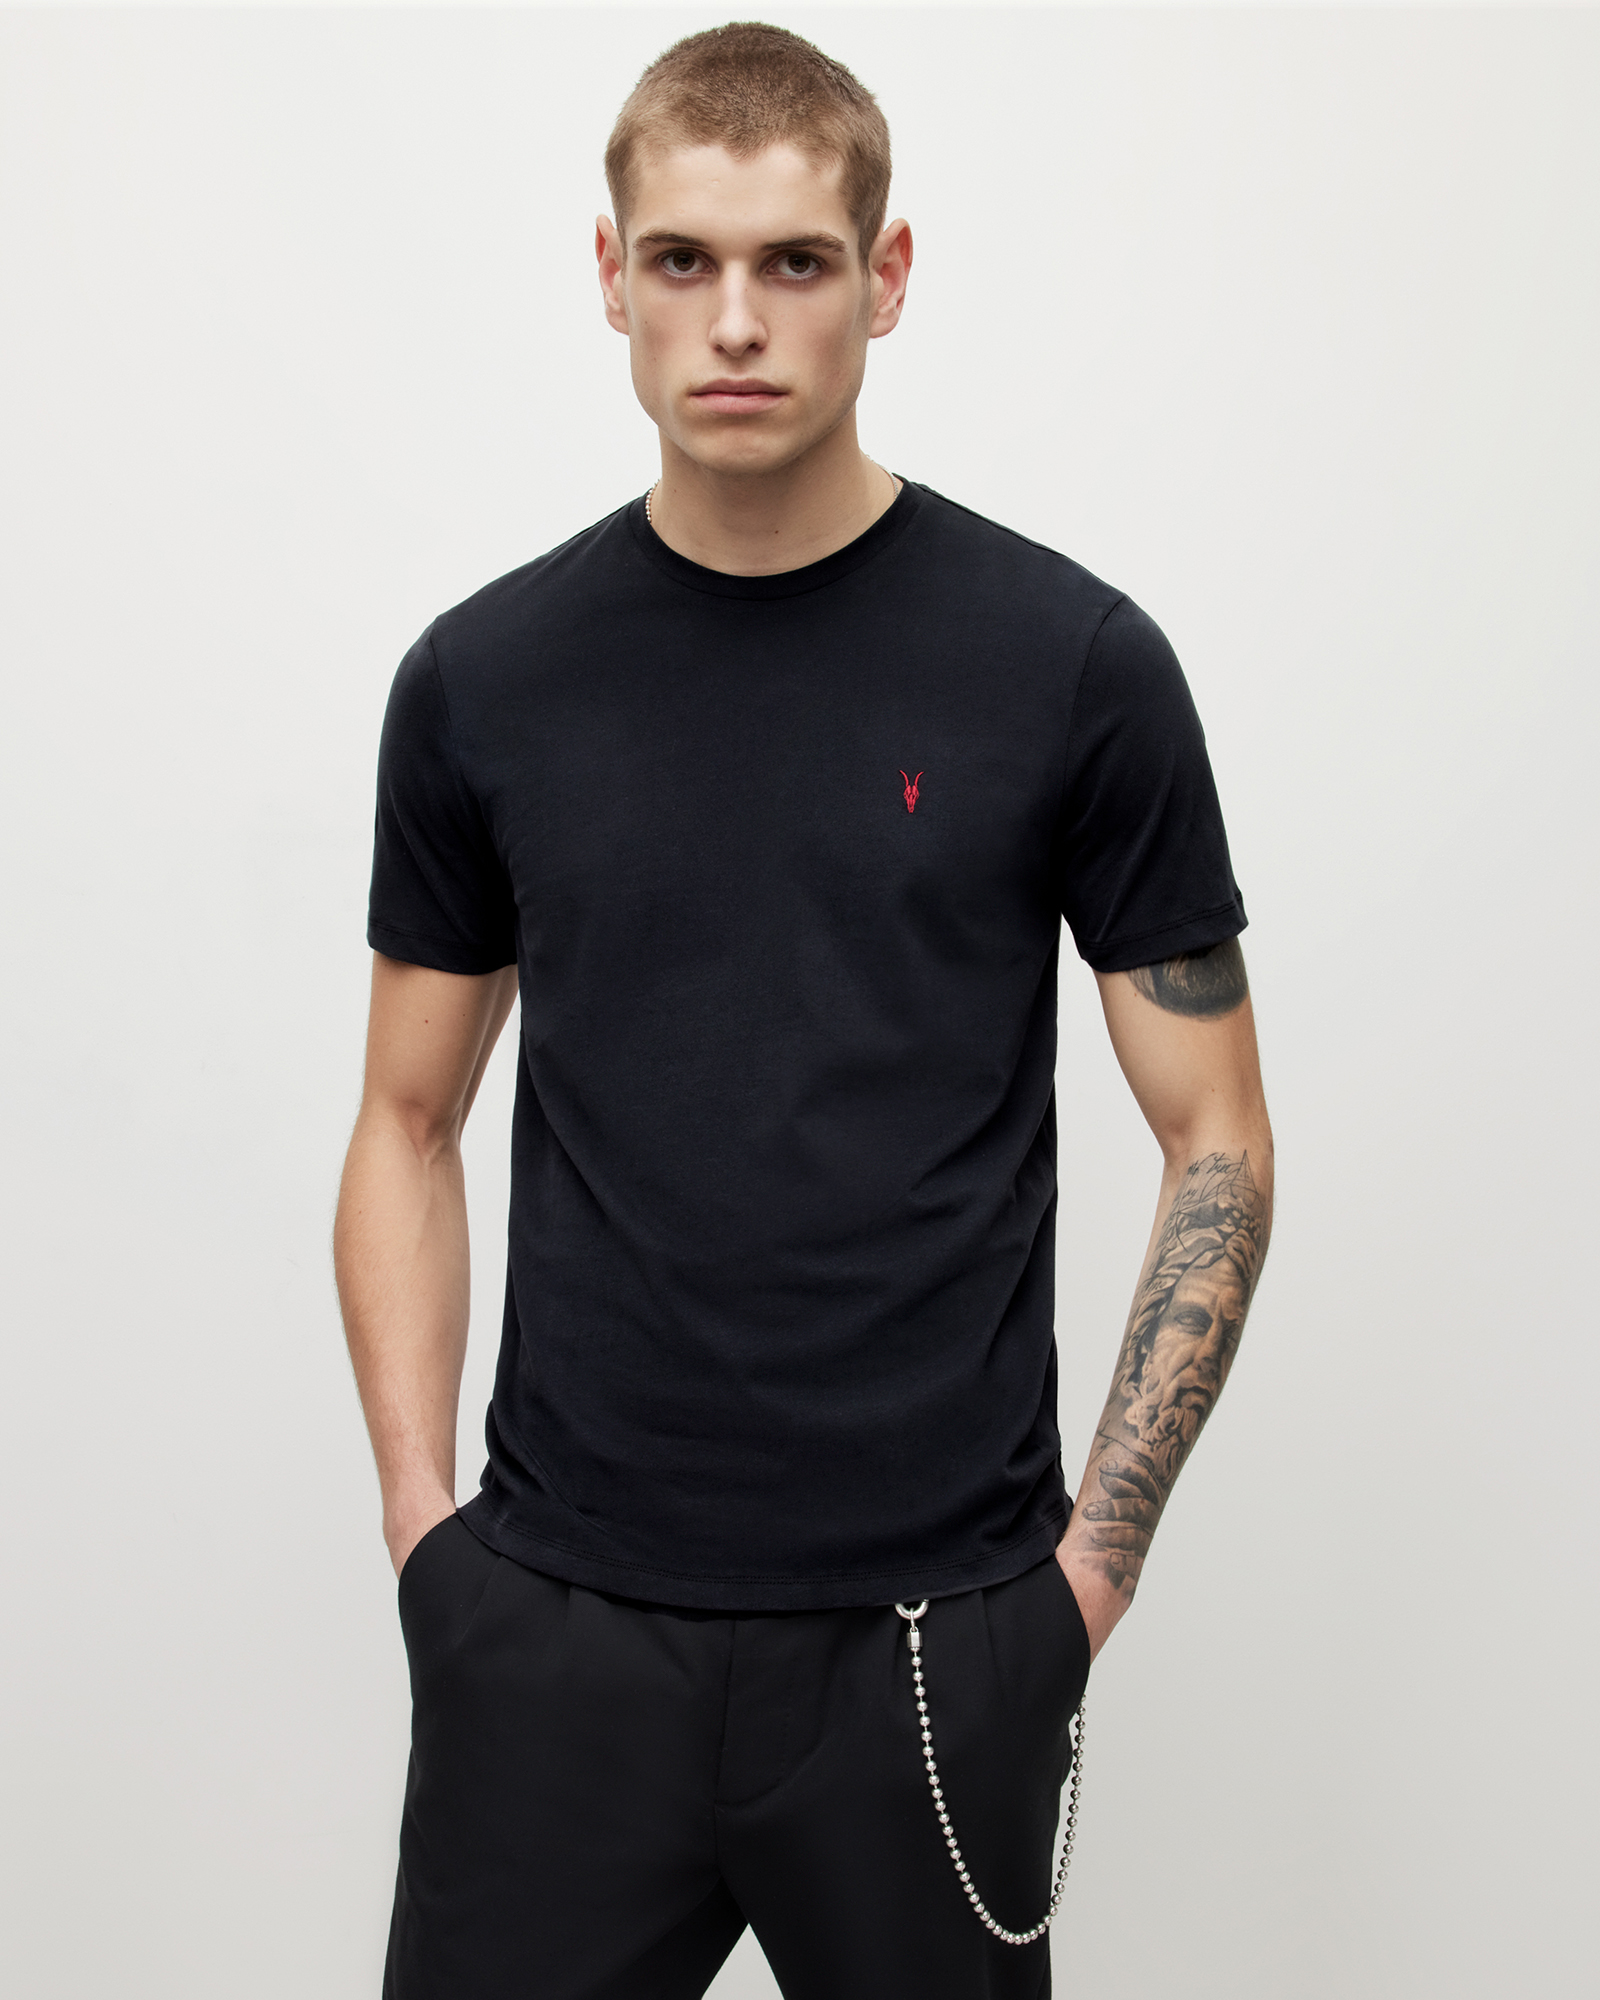 AllSaints Men's Cotton Brace Contrast Crew T-Shirt, Washed Black, Size: S